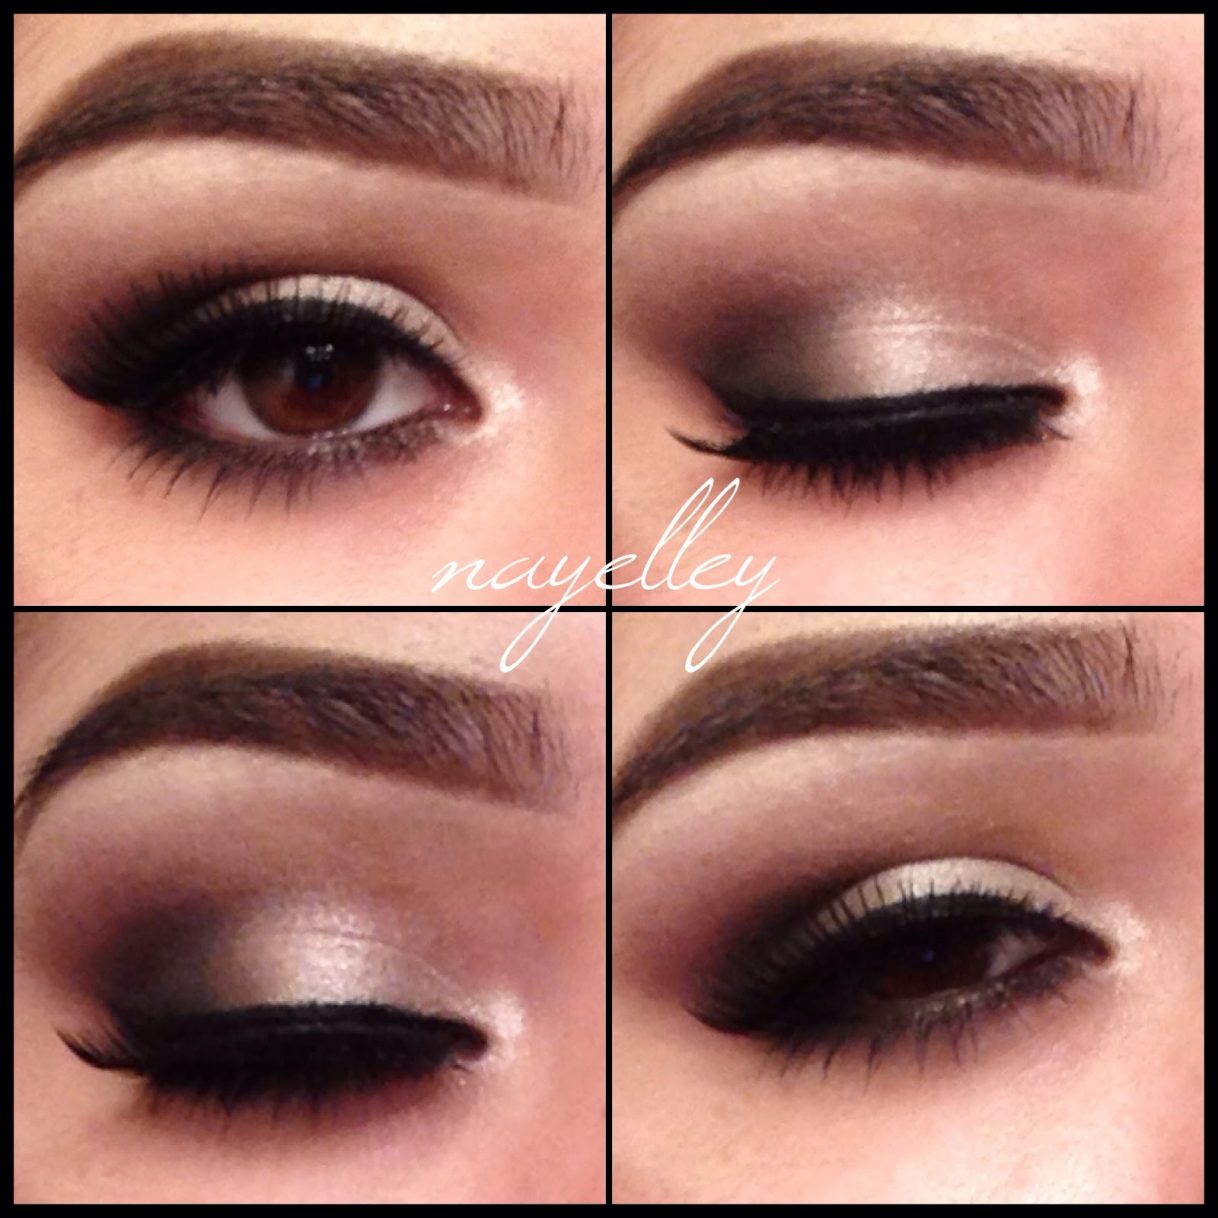 Formal Eye Makeup Makeup Nayelley Prom Eye Makeup 2014